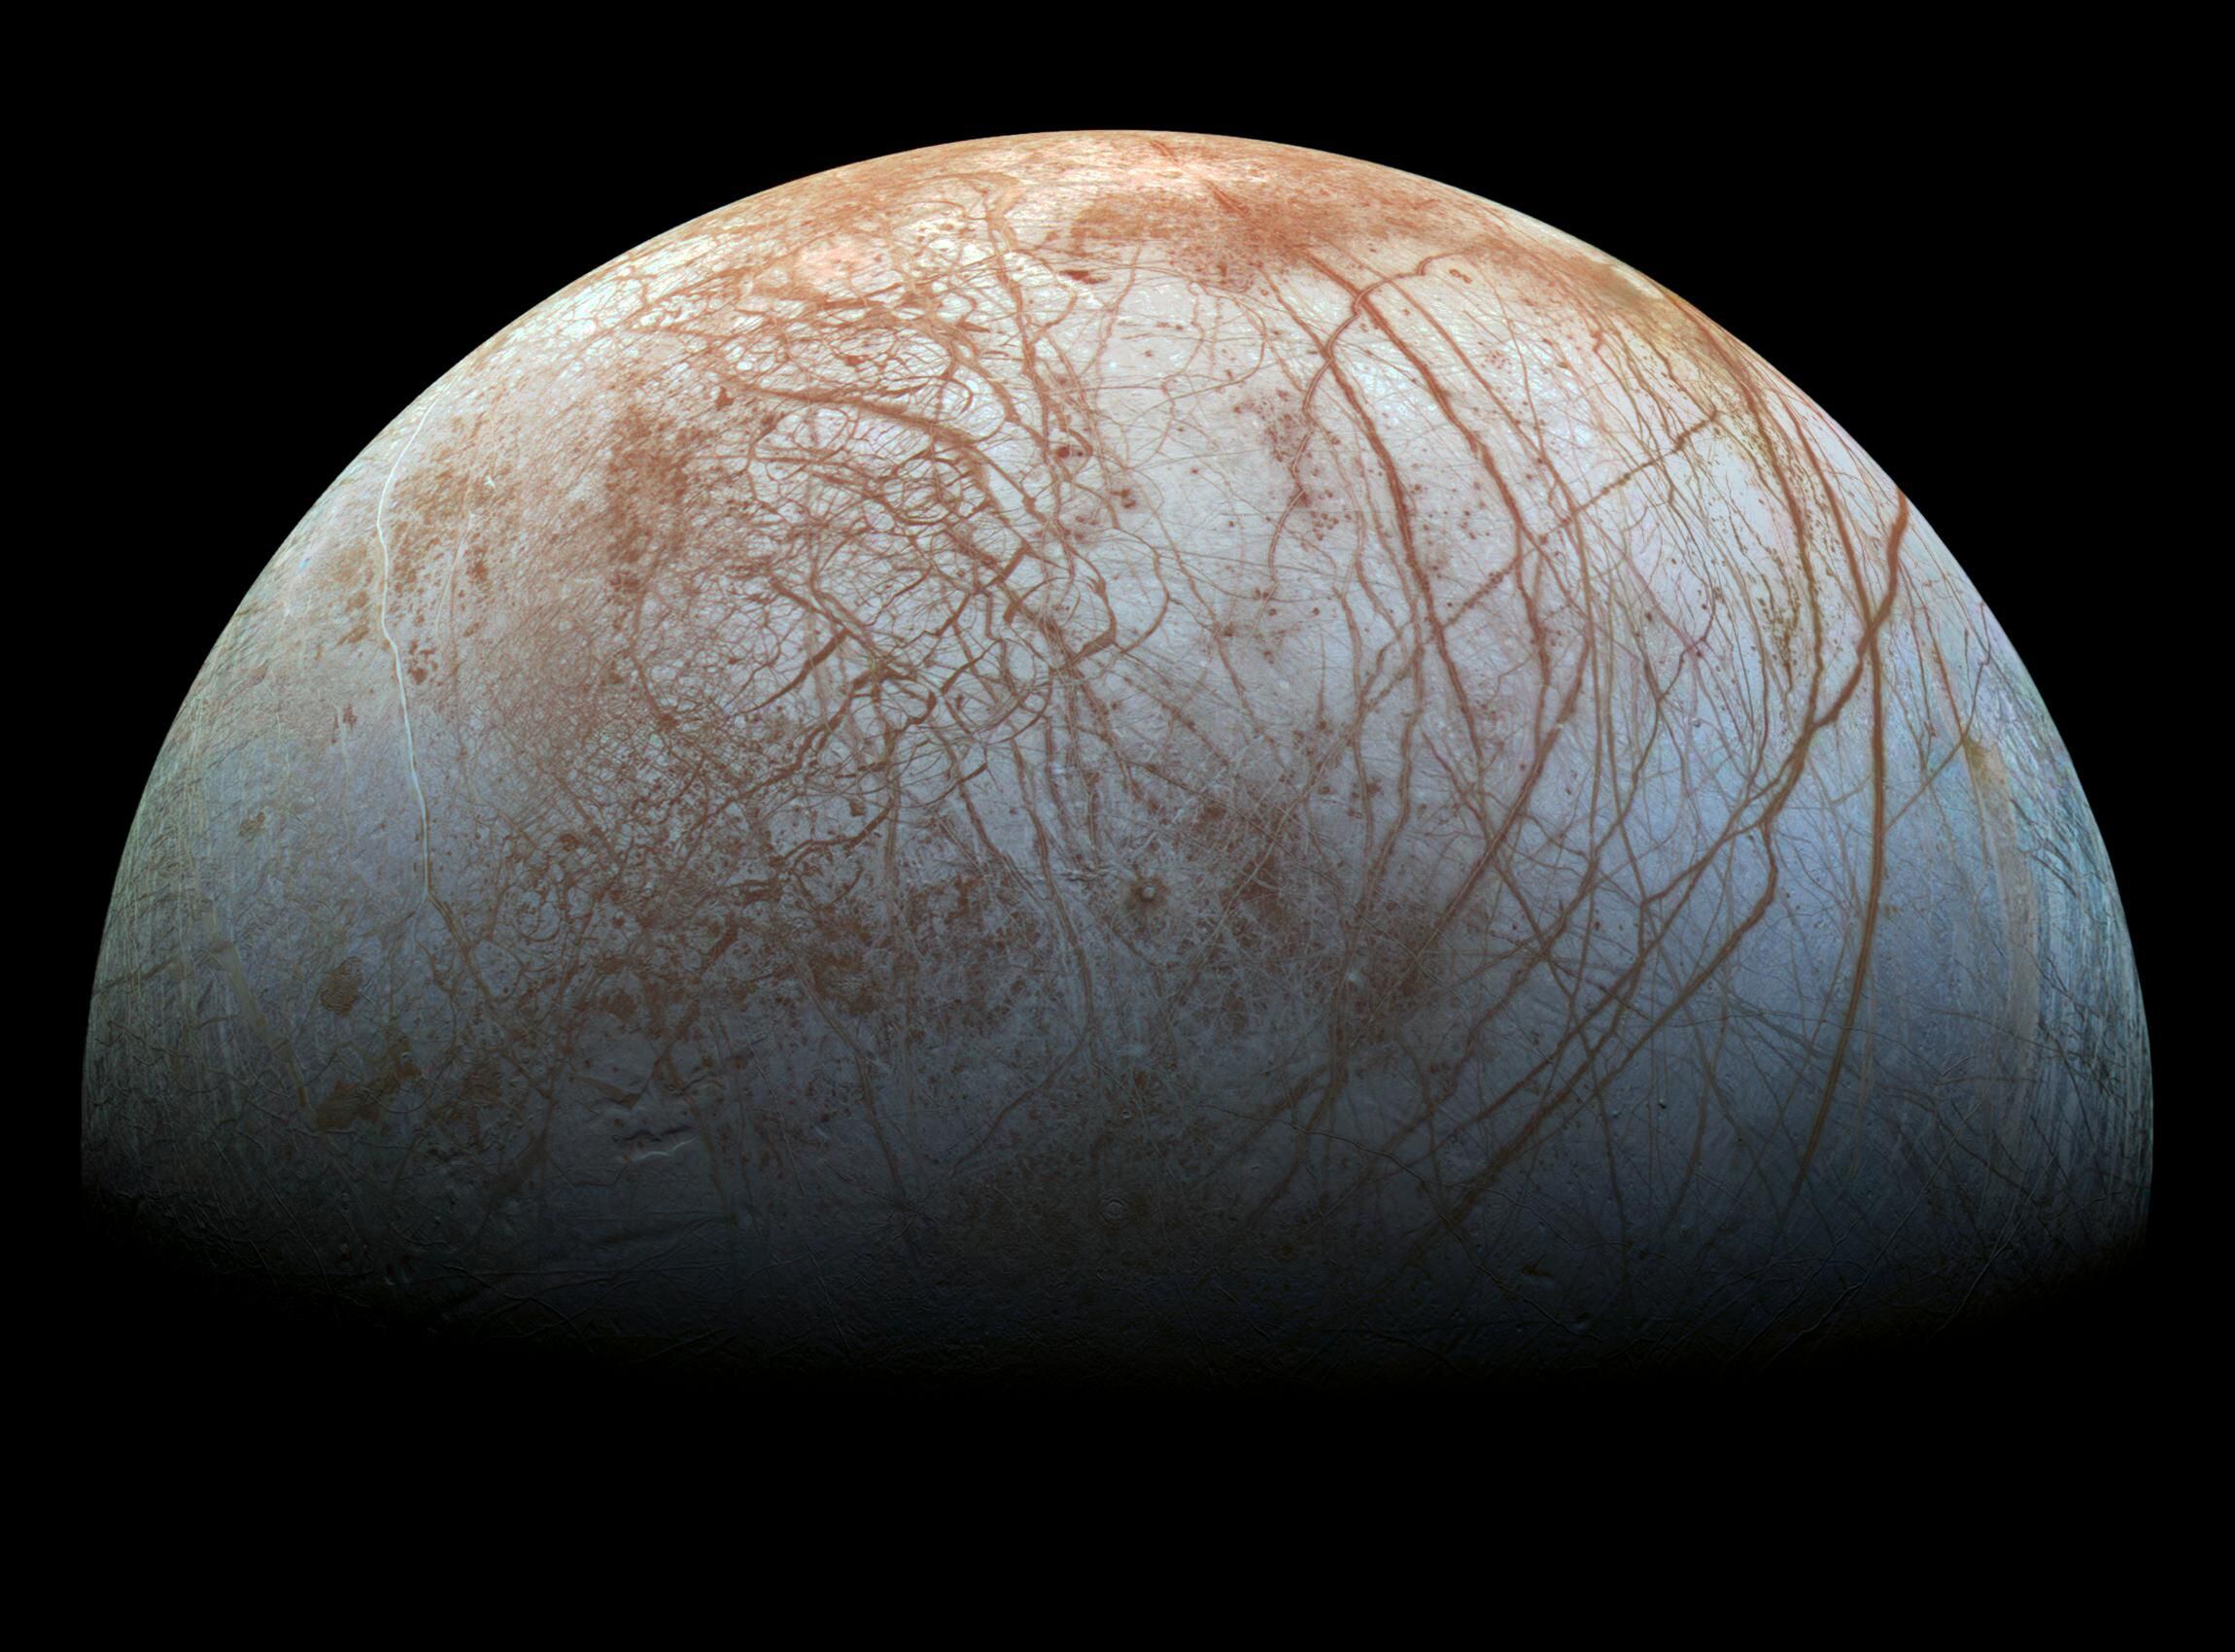 Europa, satélite natural de Júpiter, está compuesto principalmente por silicatos y tiene una corteza de hielo de agua . Cuenta con una leve atmósfera de oxígeno, entre otros gases. Su superficie estriada es la más lisa de los objetos conocido del sistema solar (NASA/JPL-Caltech/SETI Institute)